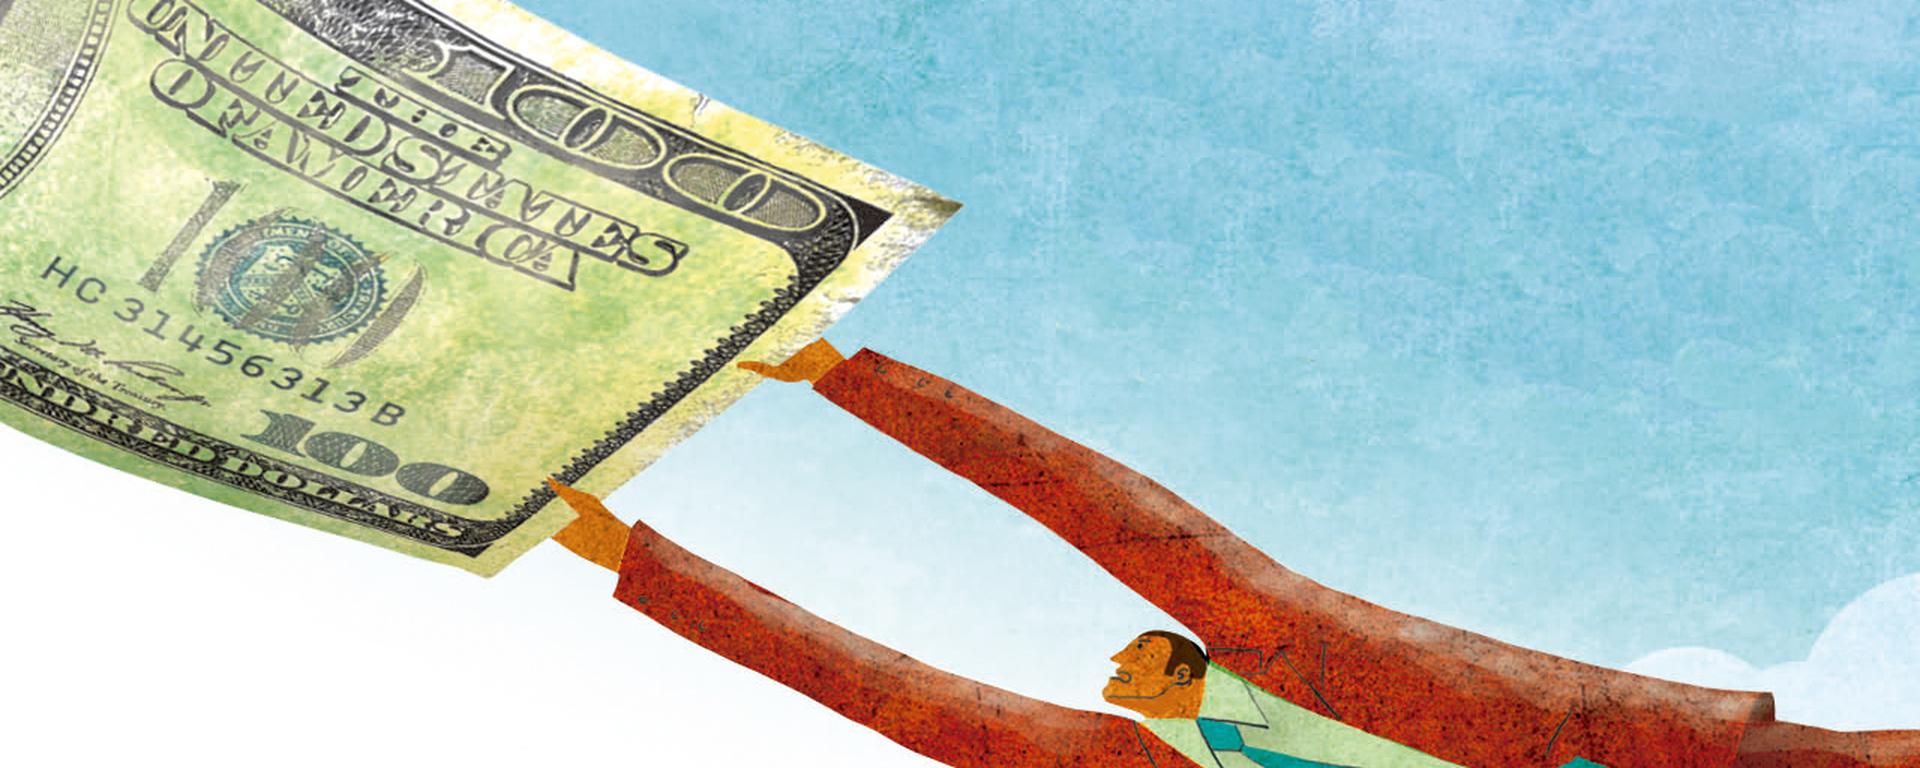 Precio del dólar: ¿Qué está empujando el alza del tipo de cambio?